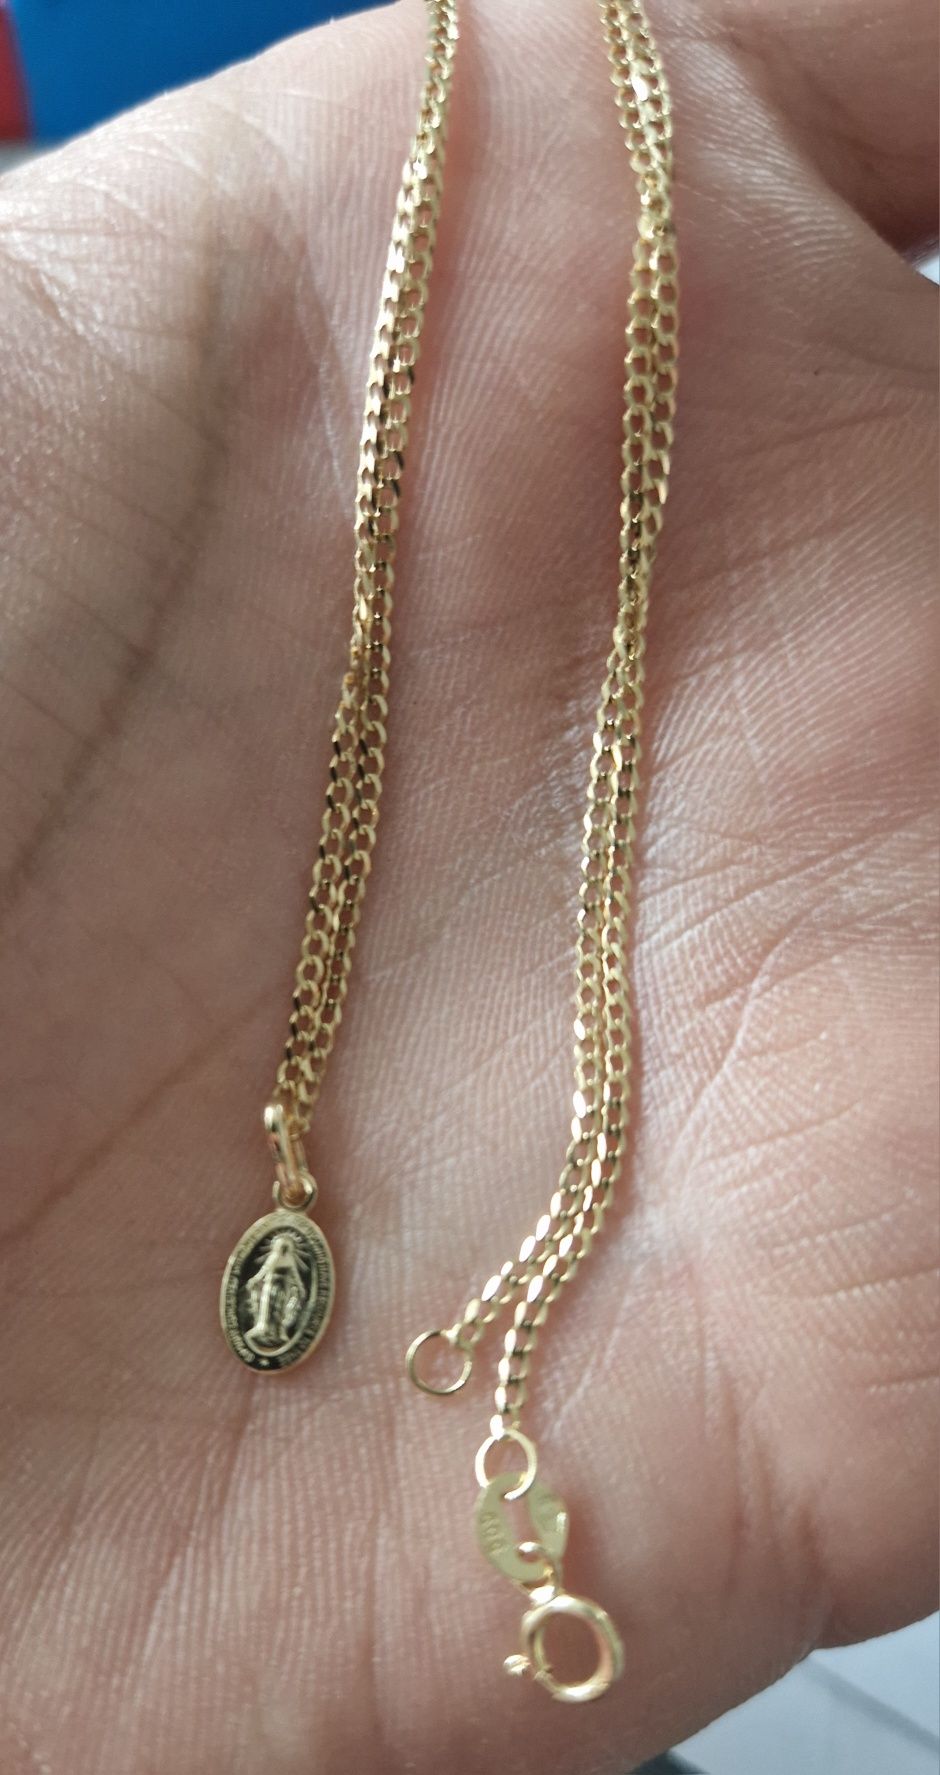 Komplet złoty łańcuszek z medalikiem NMP na komunie chrzciny 585 złoto